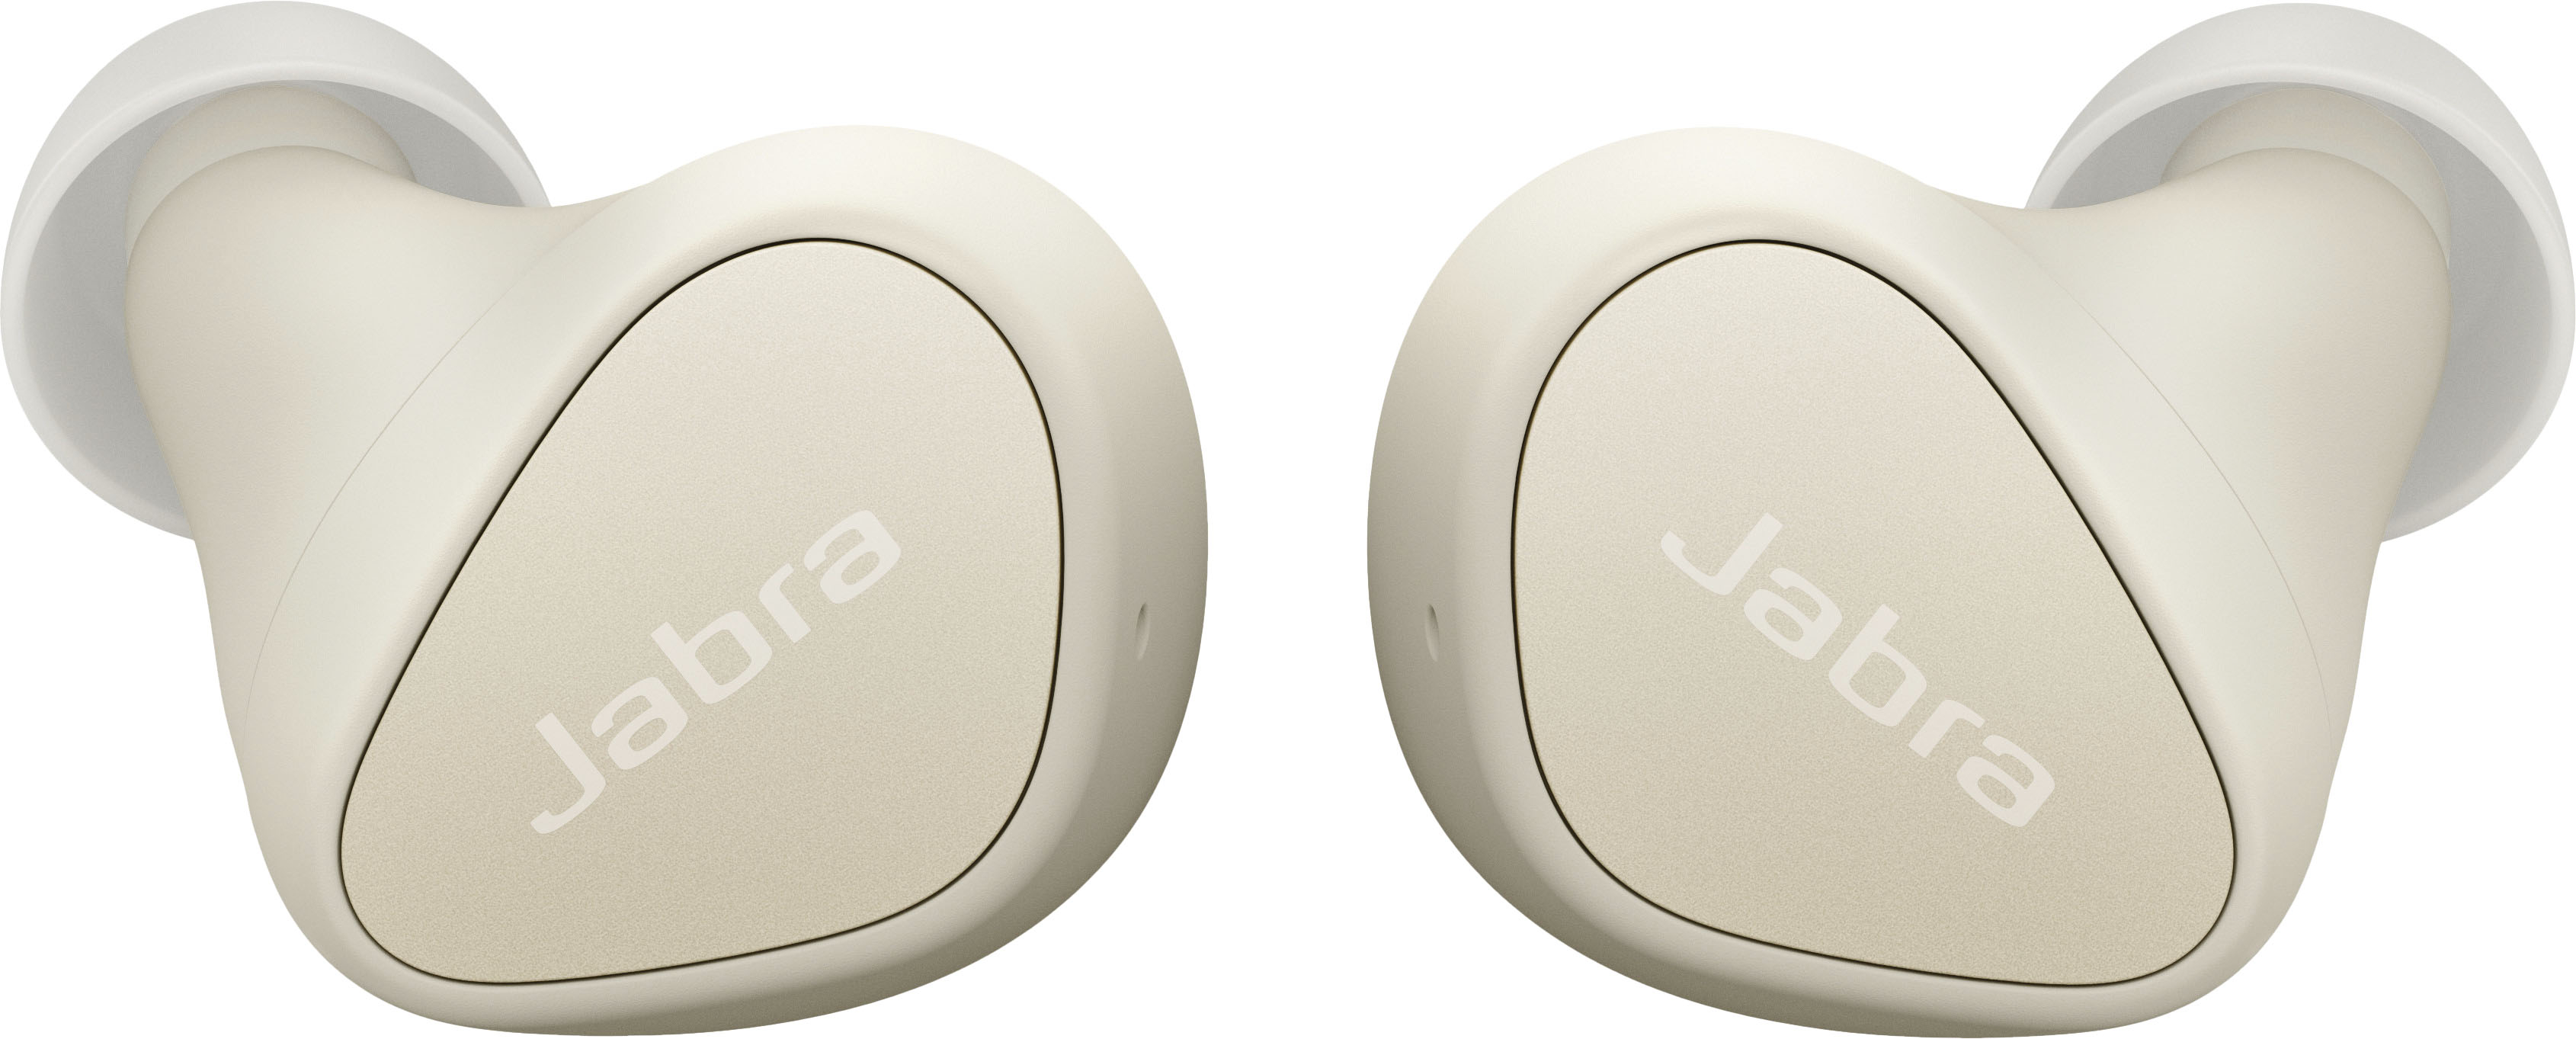 Jabra Elite 3 True Wireless In-Ear Headphones Light Beige 100-91410003-02 -  Best Buy